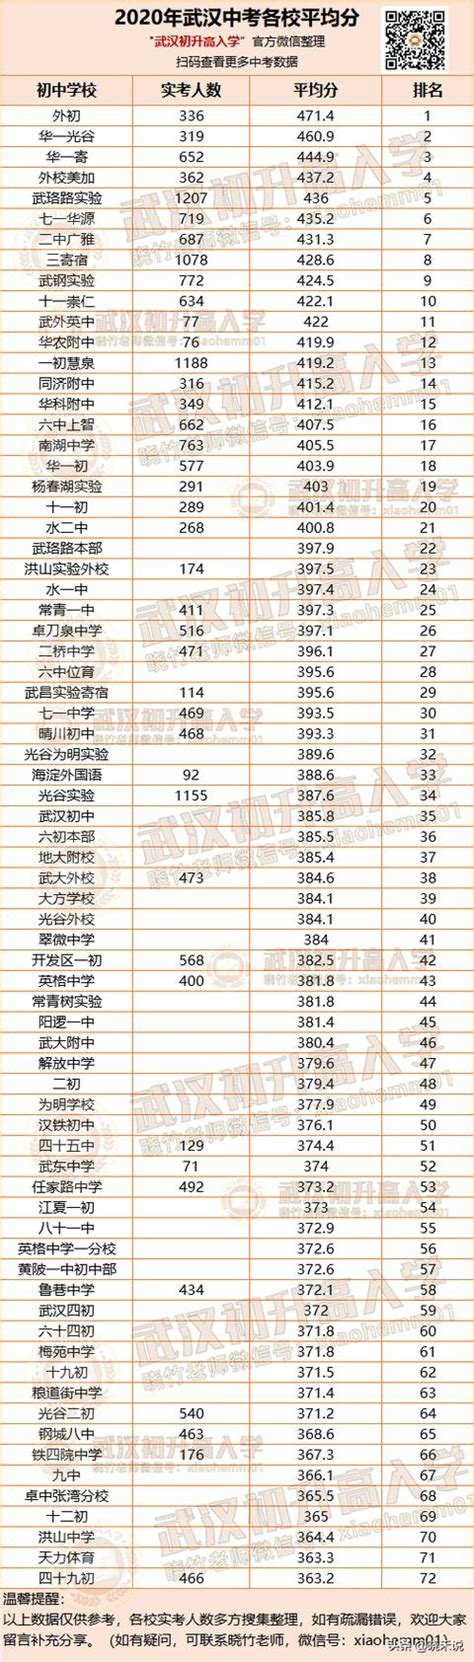 2019中考分数排行榜_速看 宿松2019年中考成绩排名表(2)_中国排行网